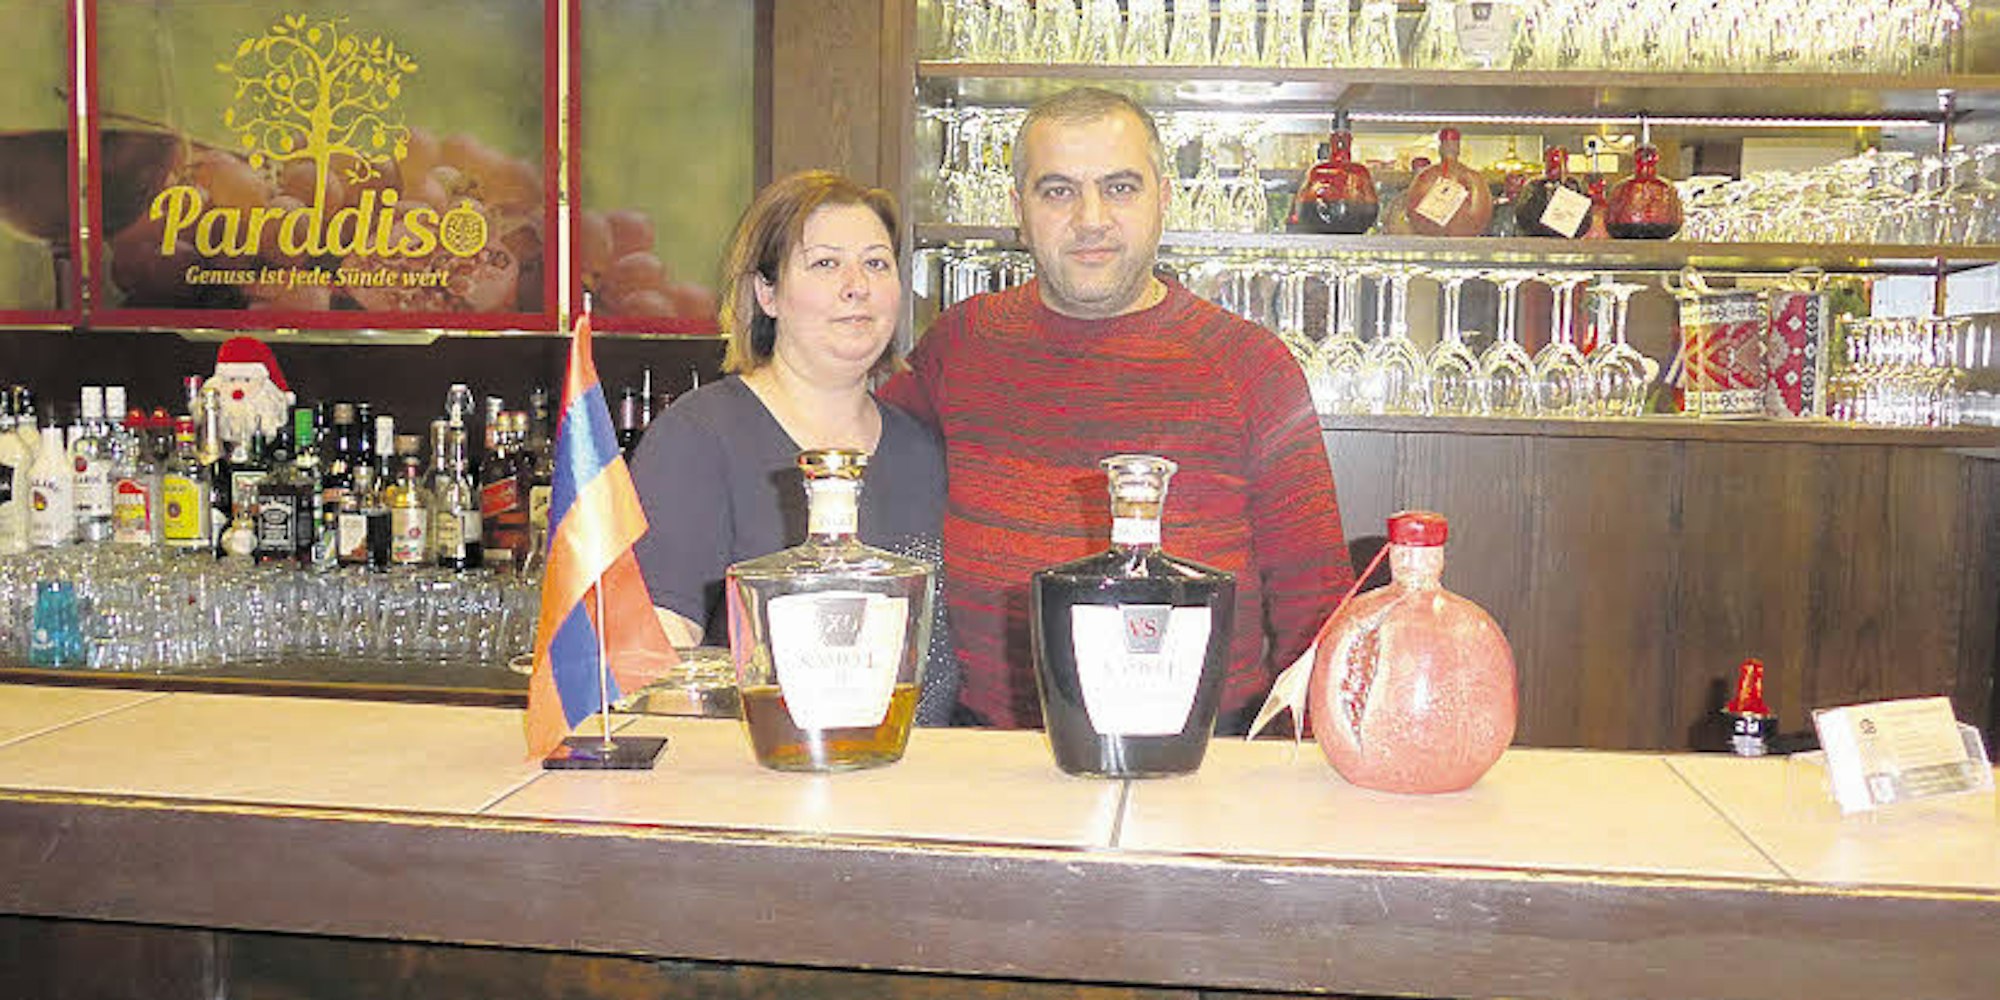 Armen und Abovyan Abrahamyan servieren Grillgerichte aus ihrer armenischen Heimat.